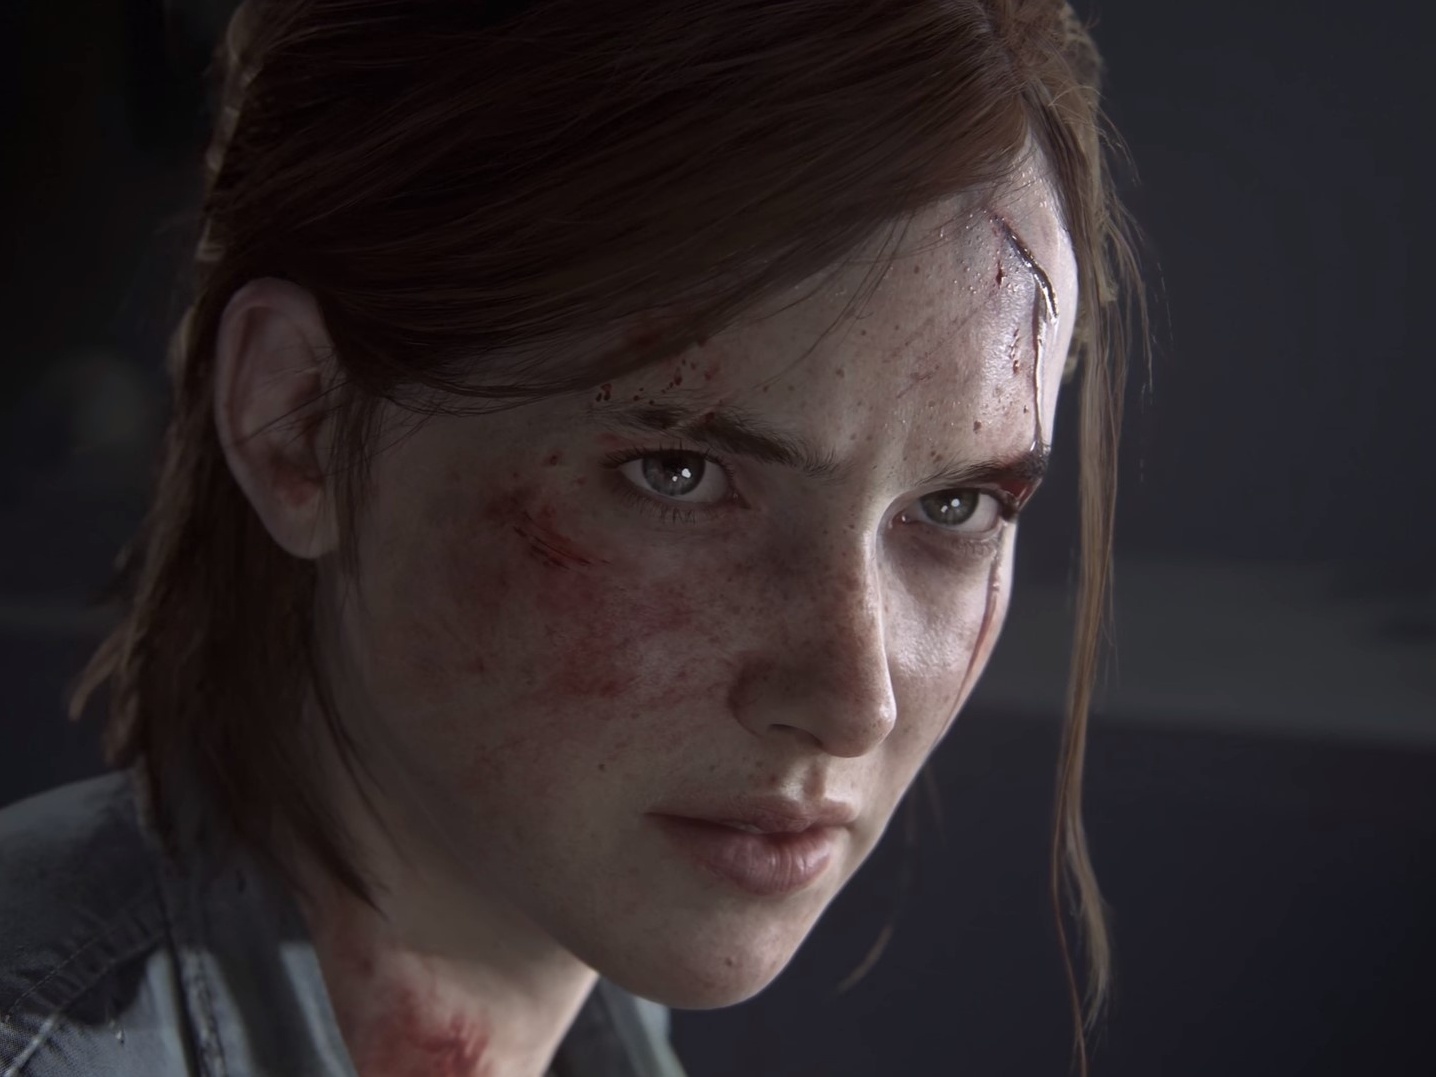 Jogo The Last Of Us Part 2 em Português - PS4 Mídia Física em Promoção na  Americanas